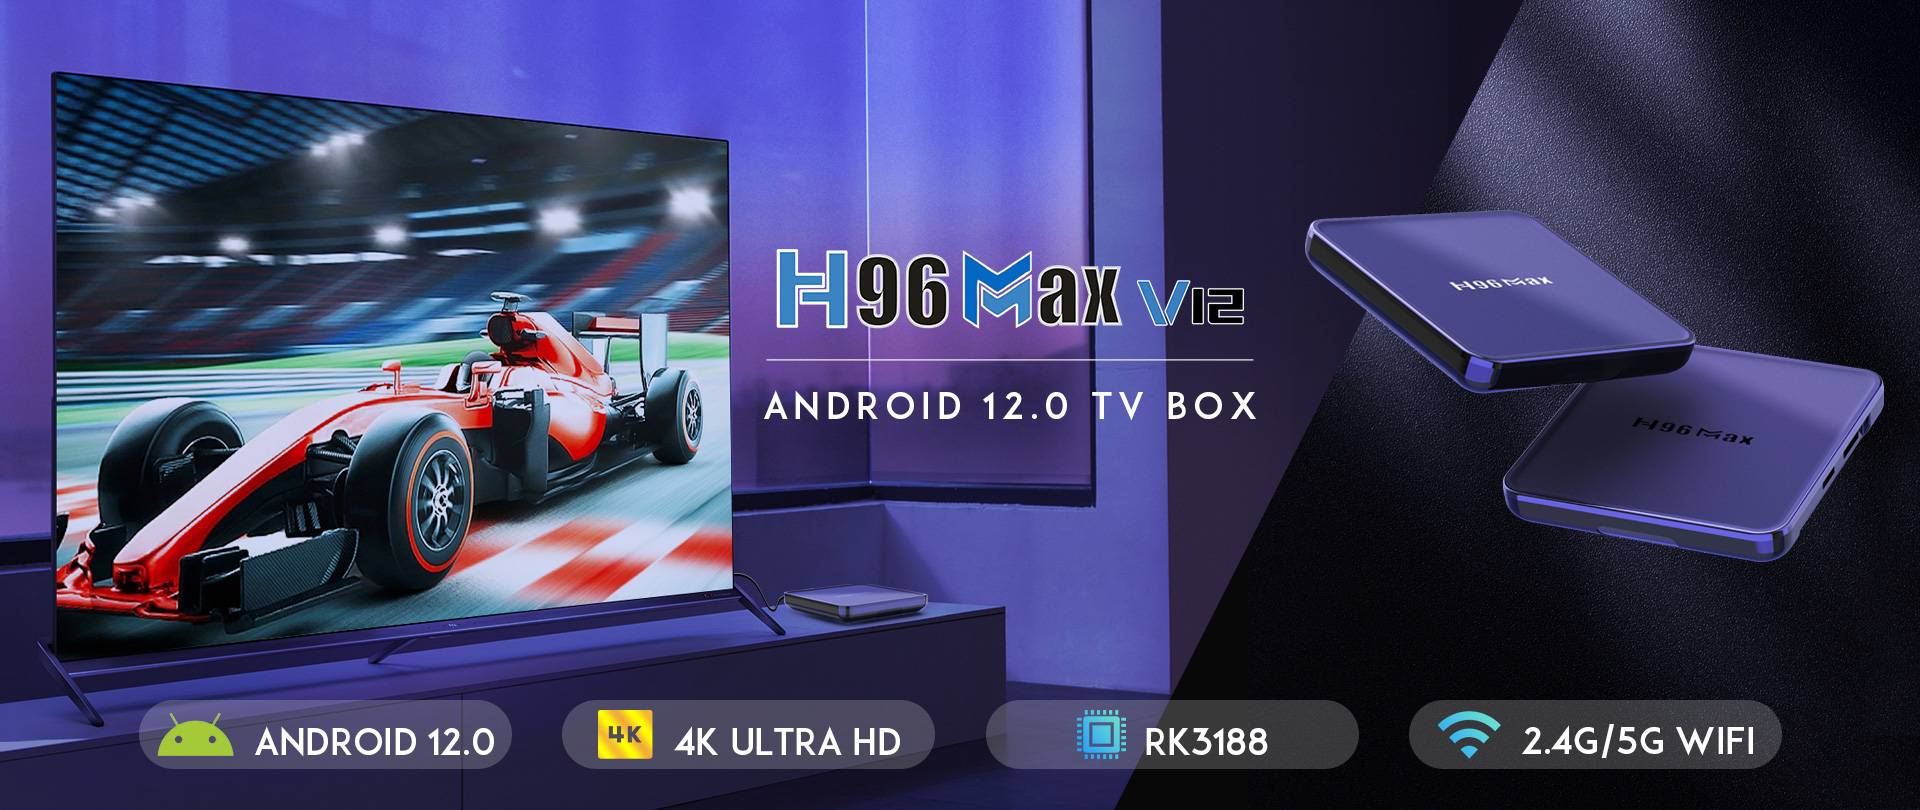 H96 MAX V12 Android 12.0 TV BOX